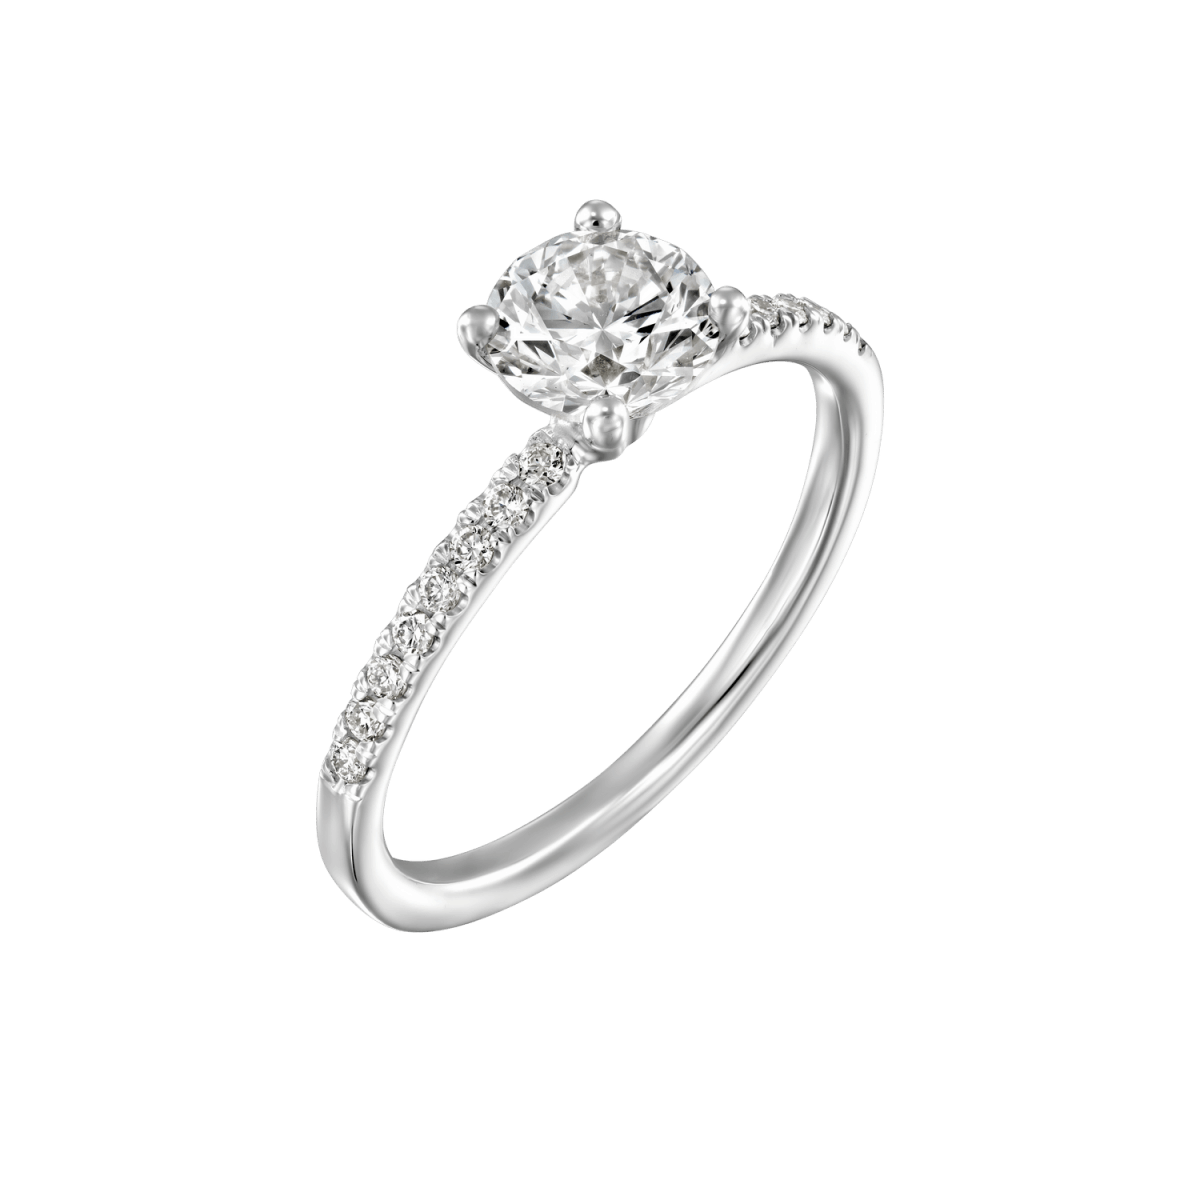 "Carol" - White Gold Lab Grown Diamond Engagement Ring 0.70ct. - main